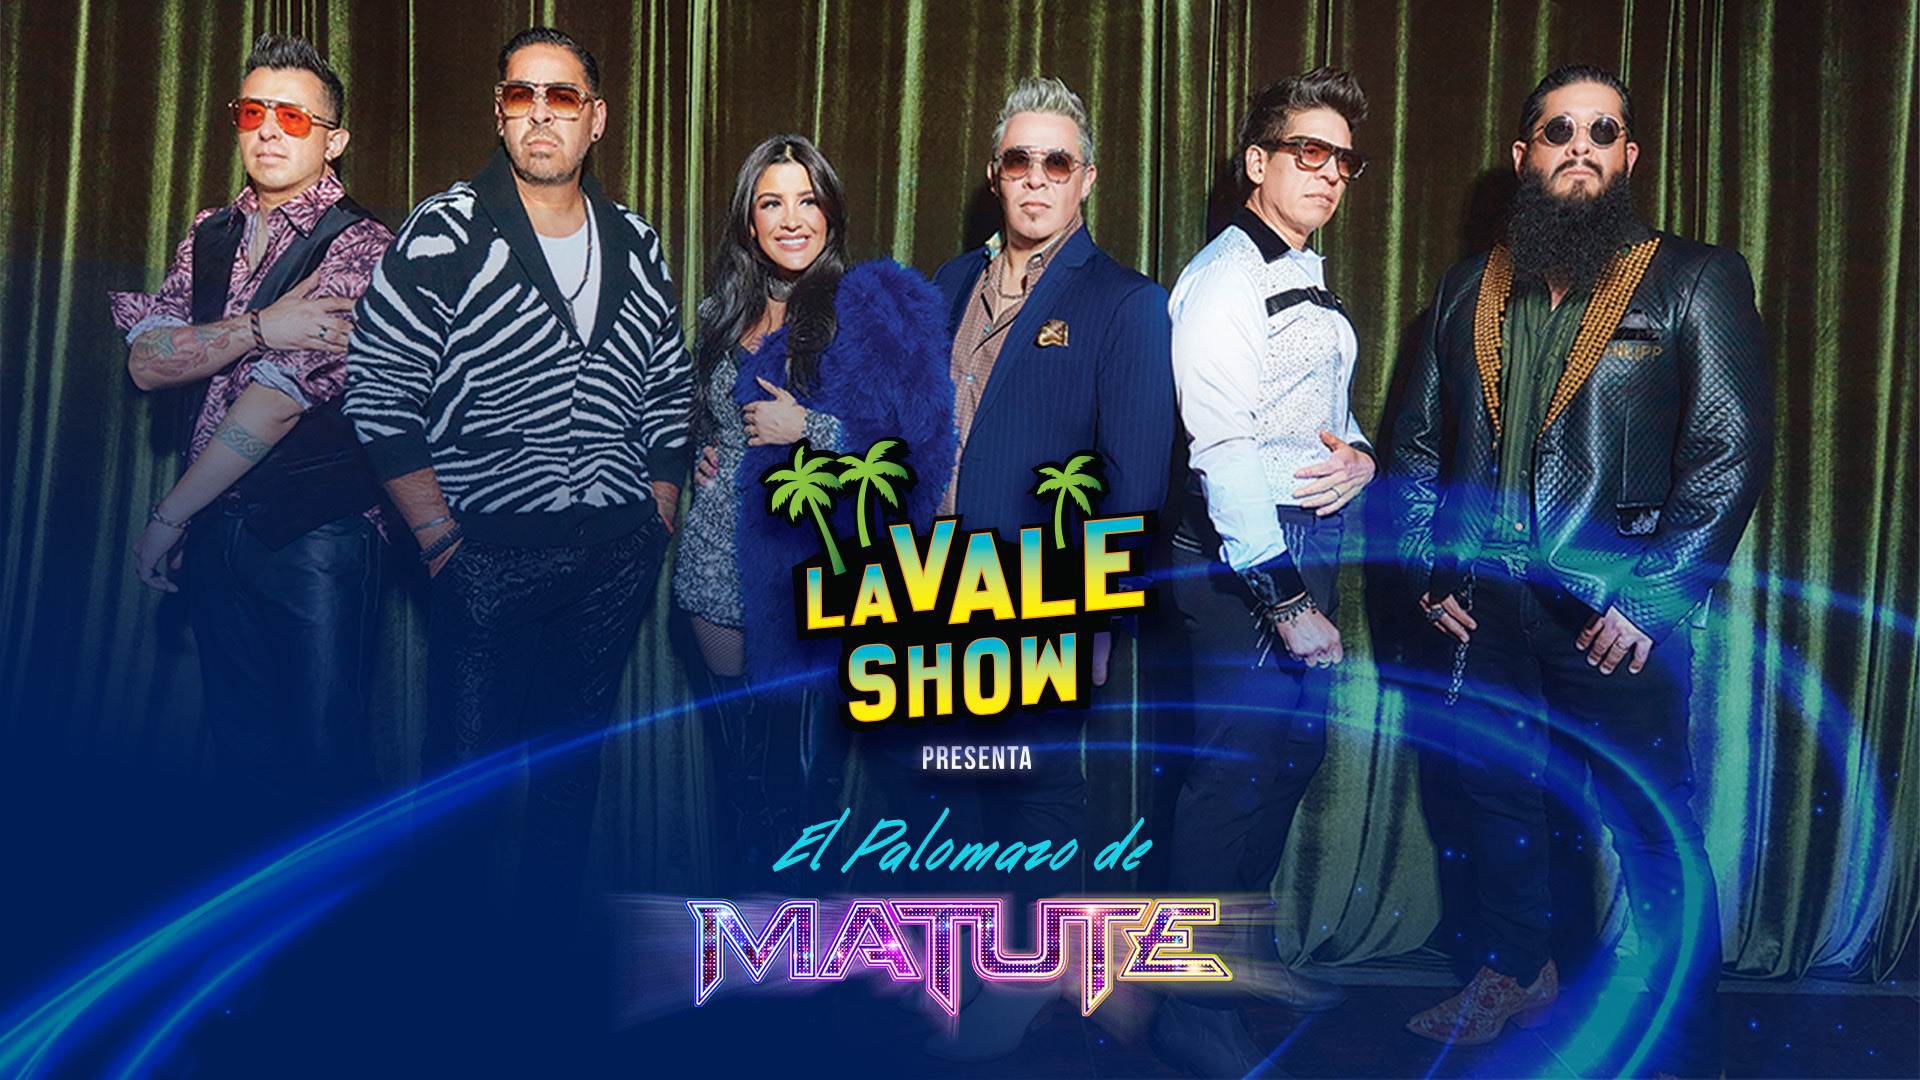 La Vale Show Presenta El Palomazo De Matute